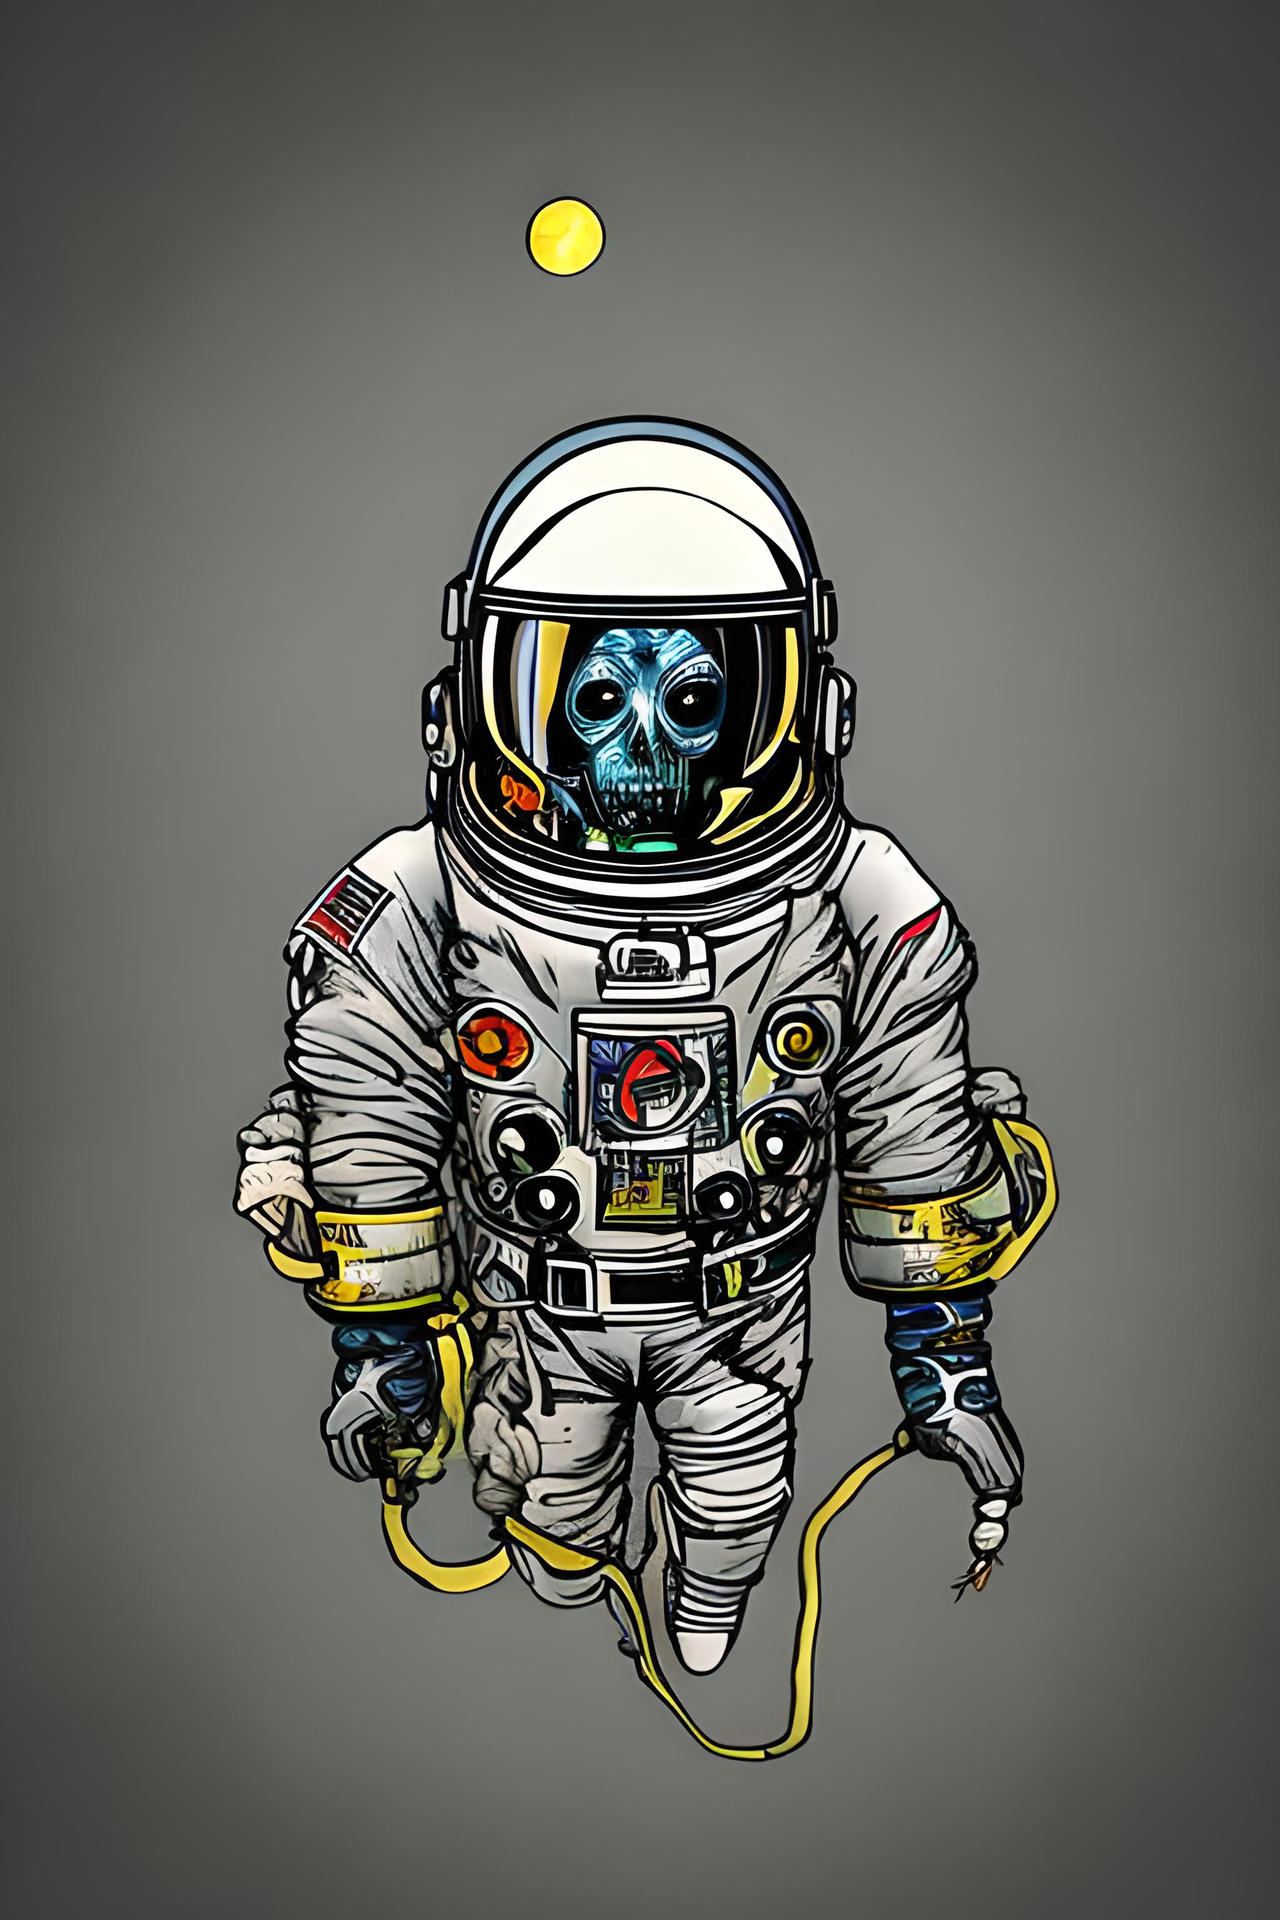 somat Spaceman artist by SomatArt on DeviantArt